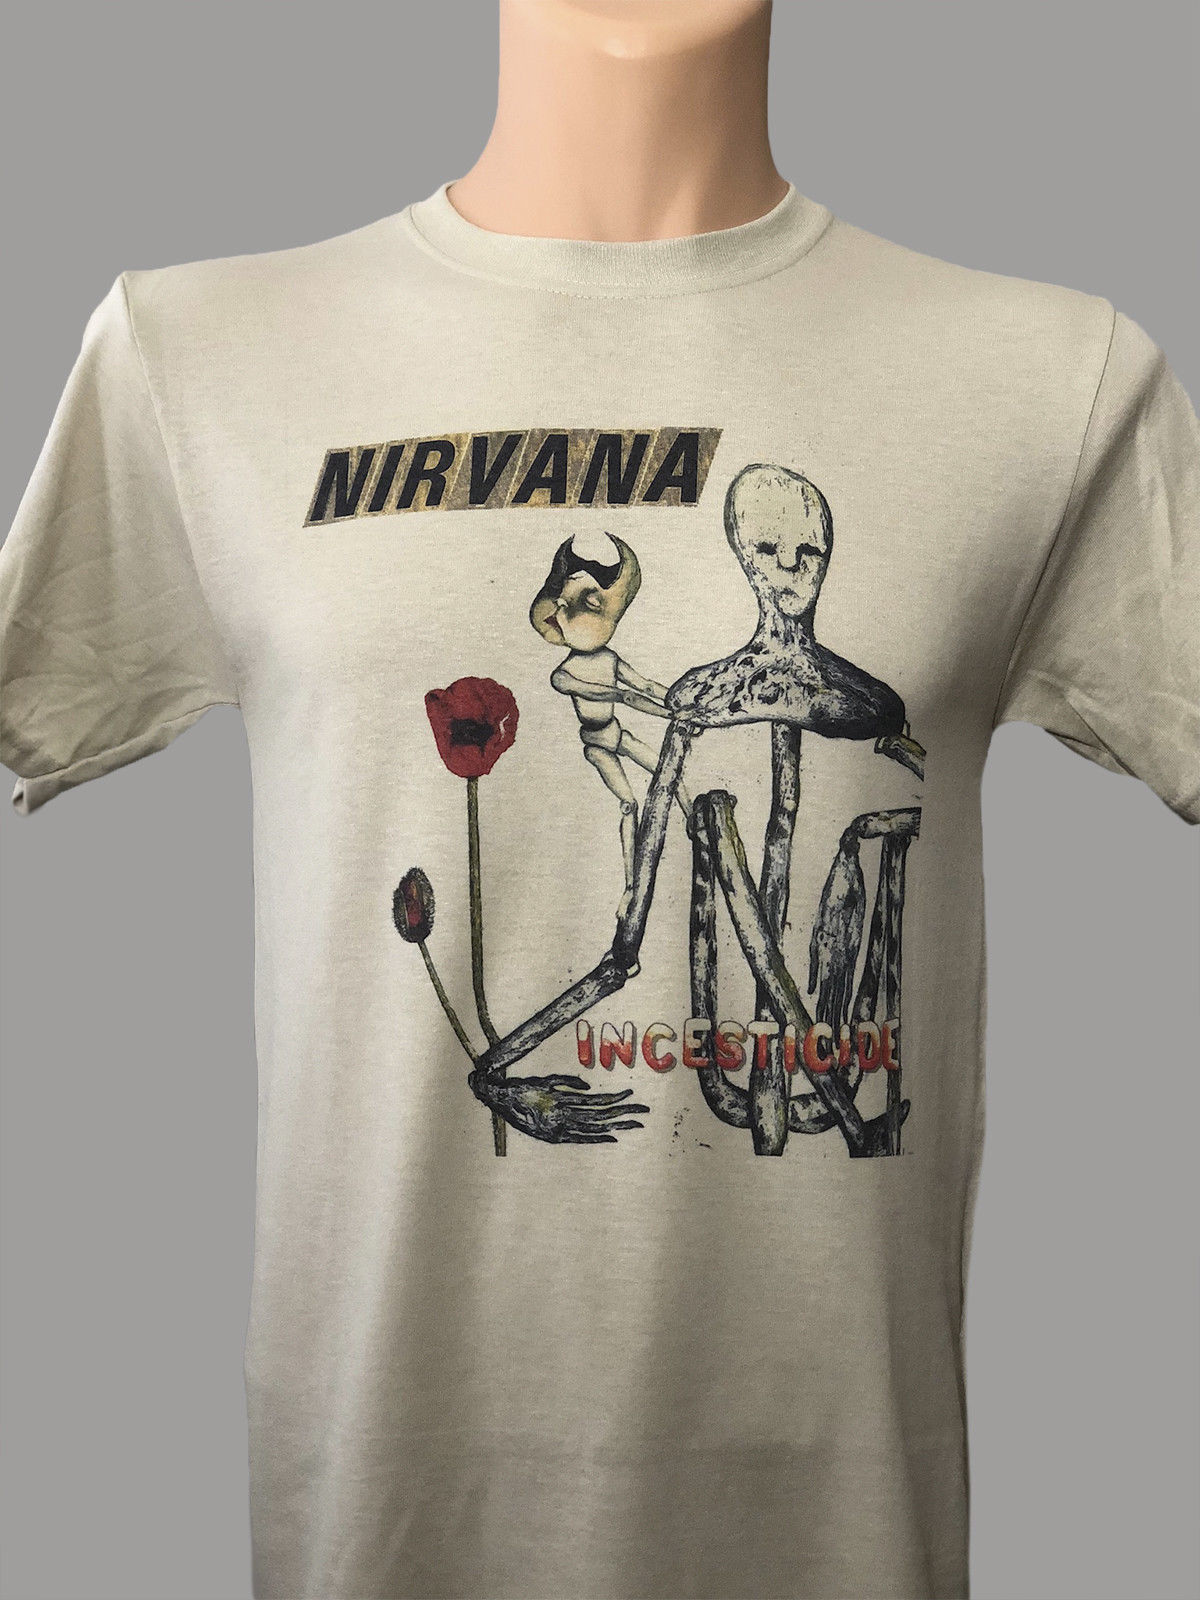 Incesticide nirvana. Футболка Нирвана Incesticide. Обложка альбома Nirvana - Incesticide. Incesticide Nirvana Курт Кобейн. Футболки с обложками альбомов.